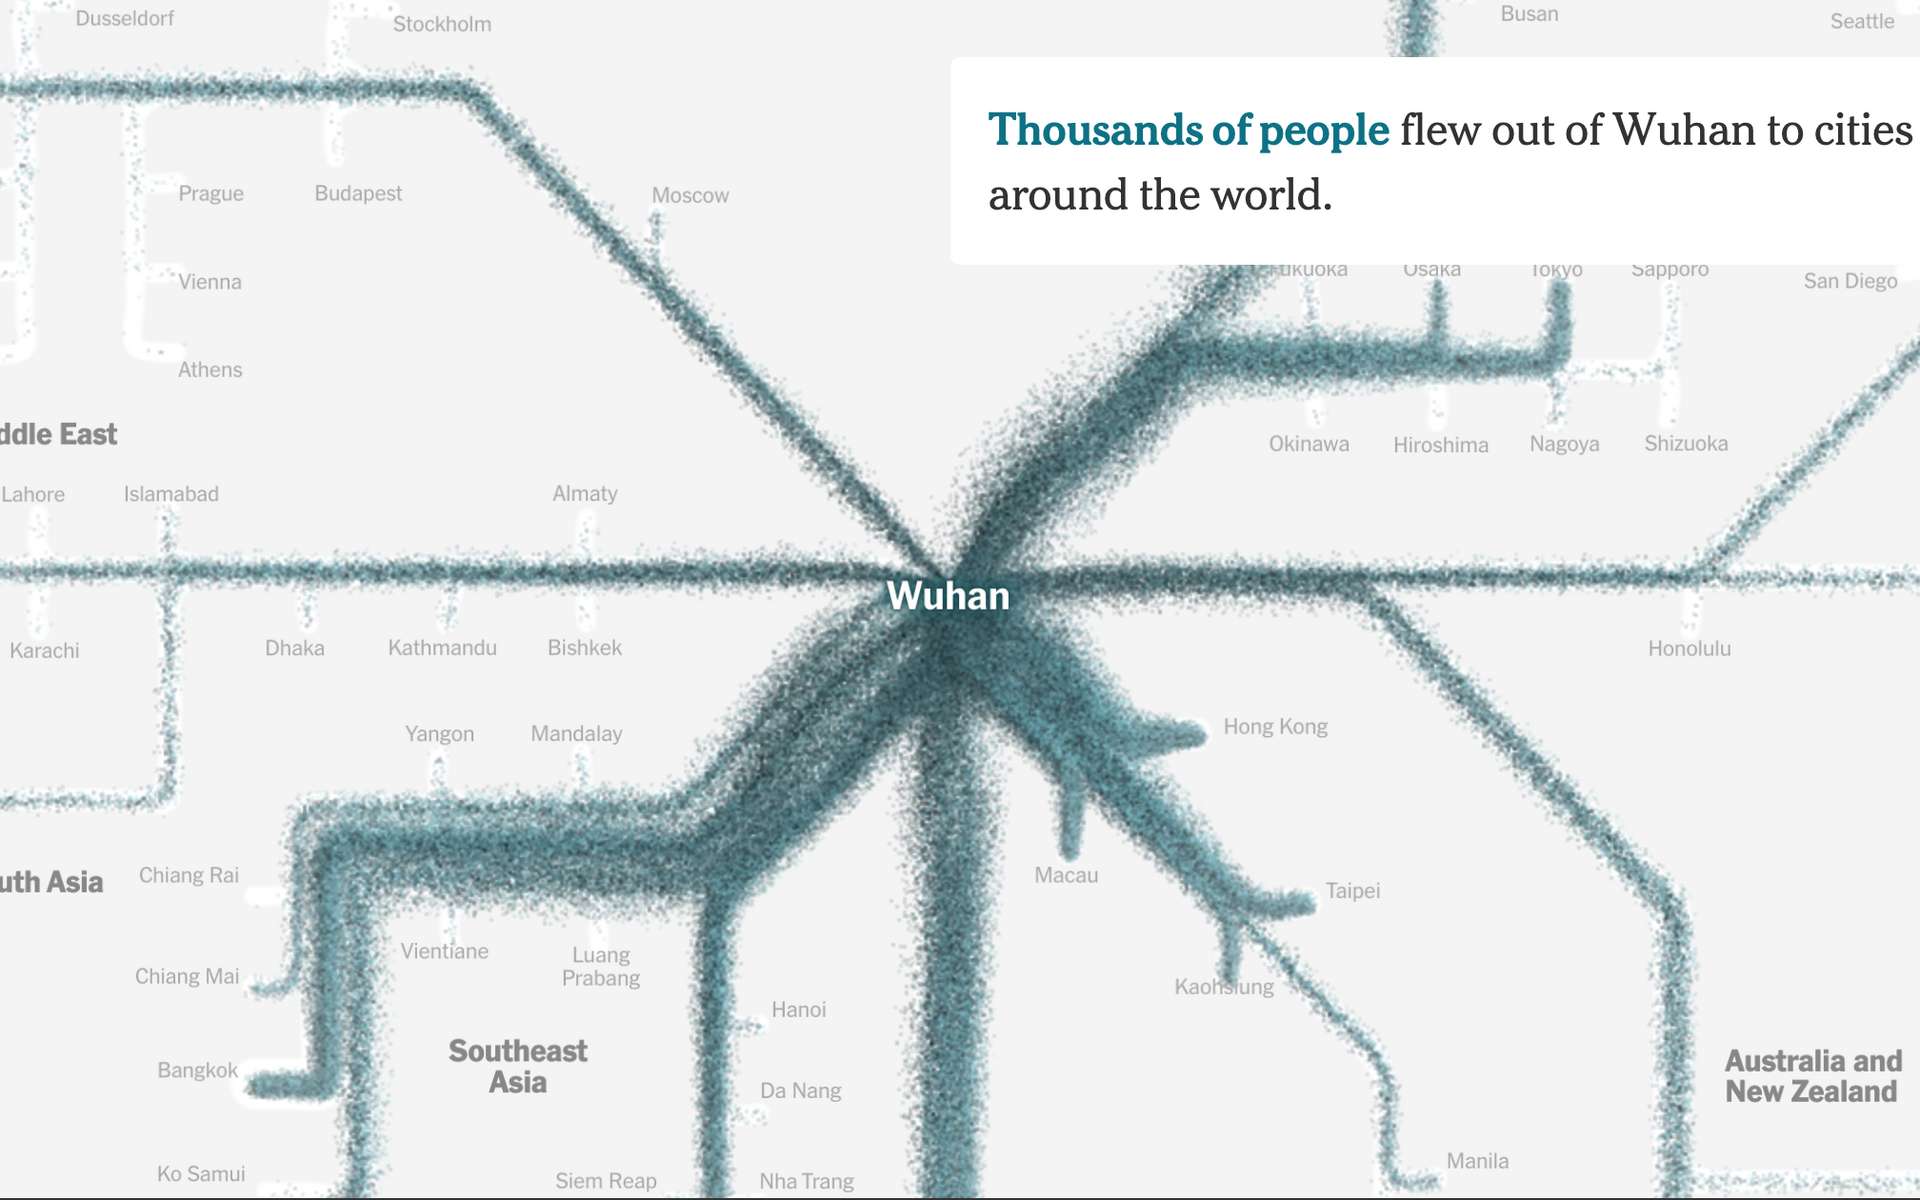 Impressionnante carte interactive de l'expansion du coronavirus dans le monde